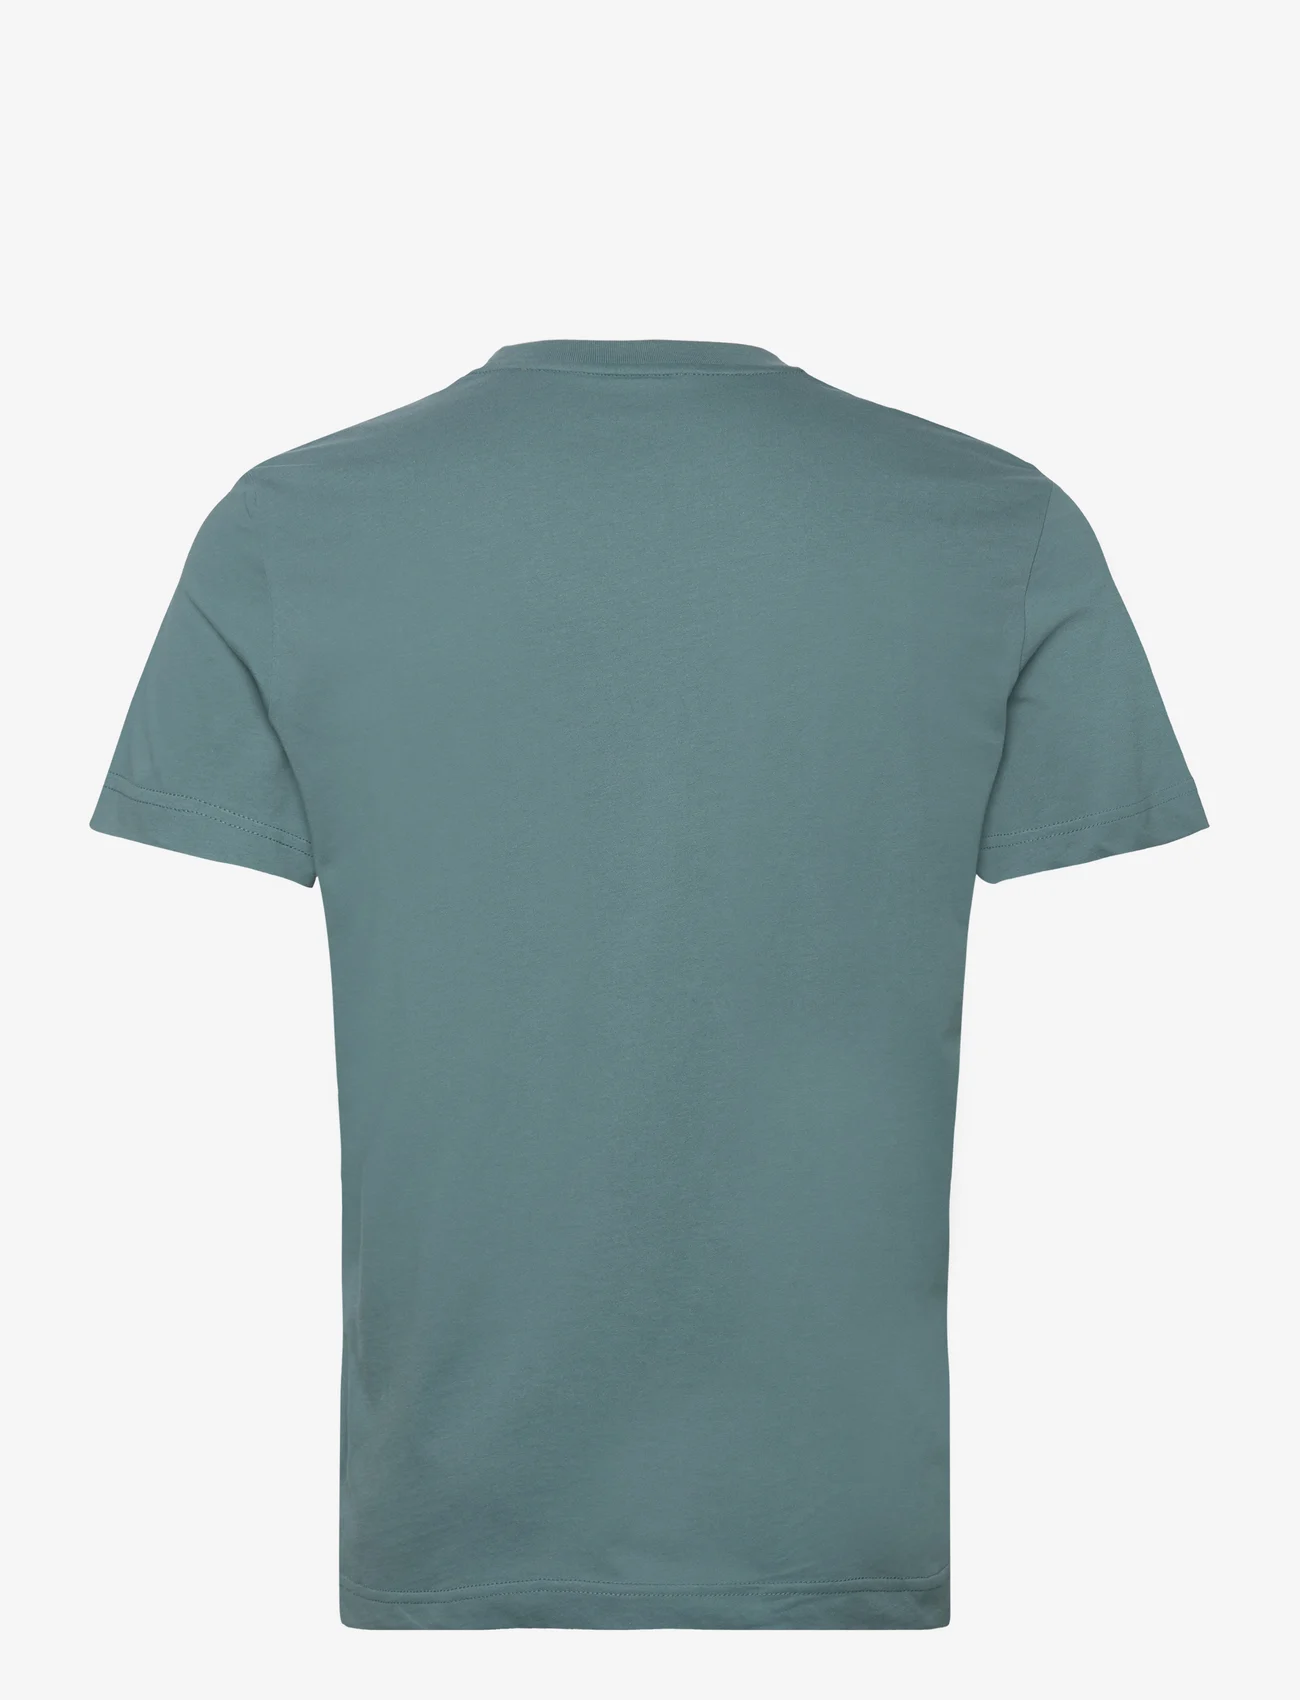 Tom Tailor - printed crewneck t-shirt - die niedrigsten preise - deep bluish green - 1